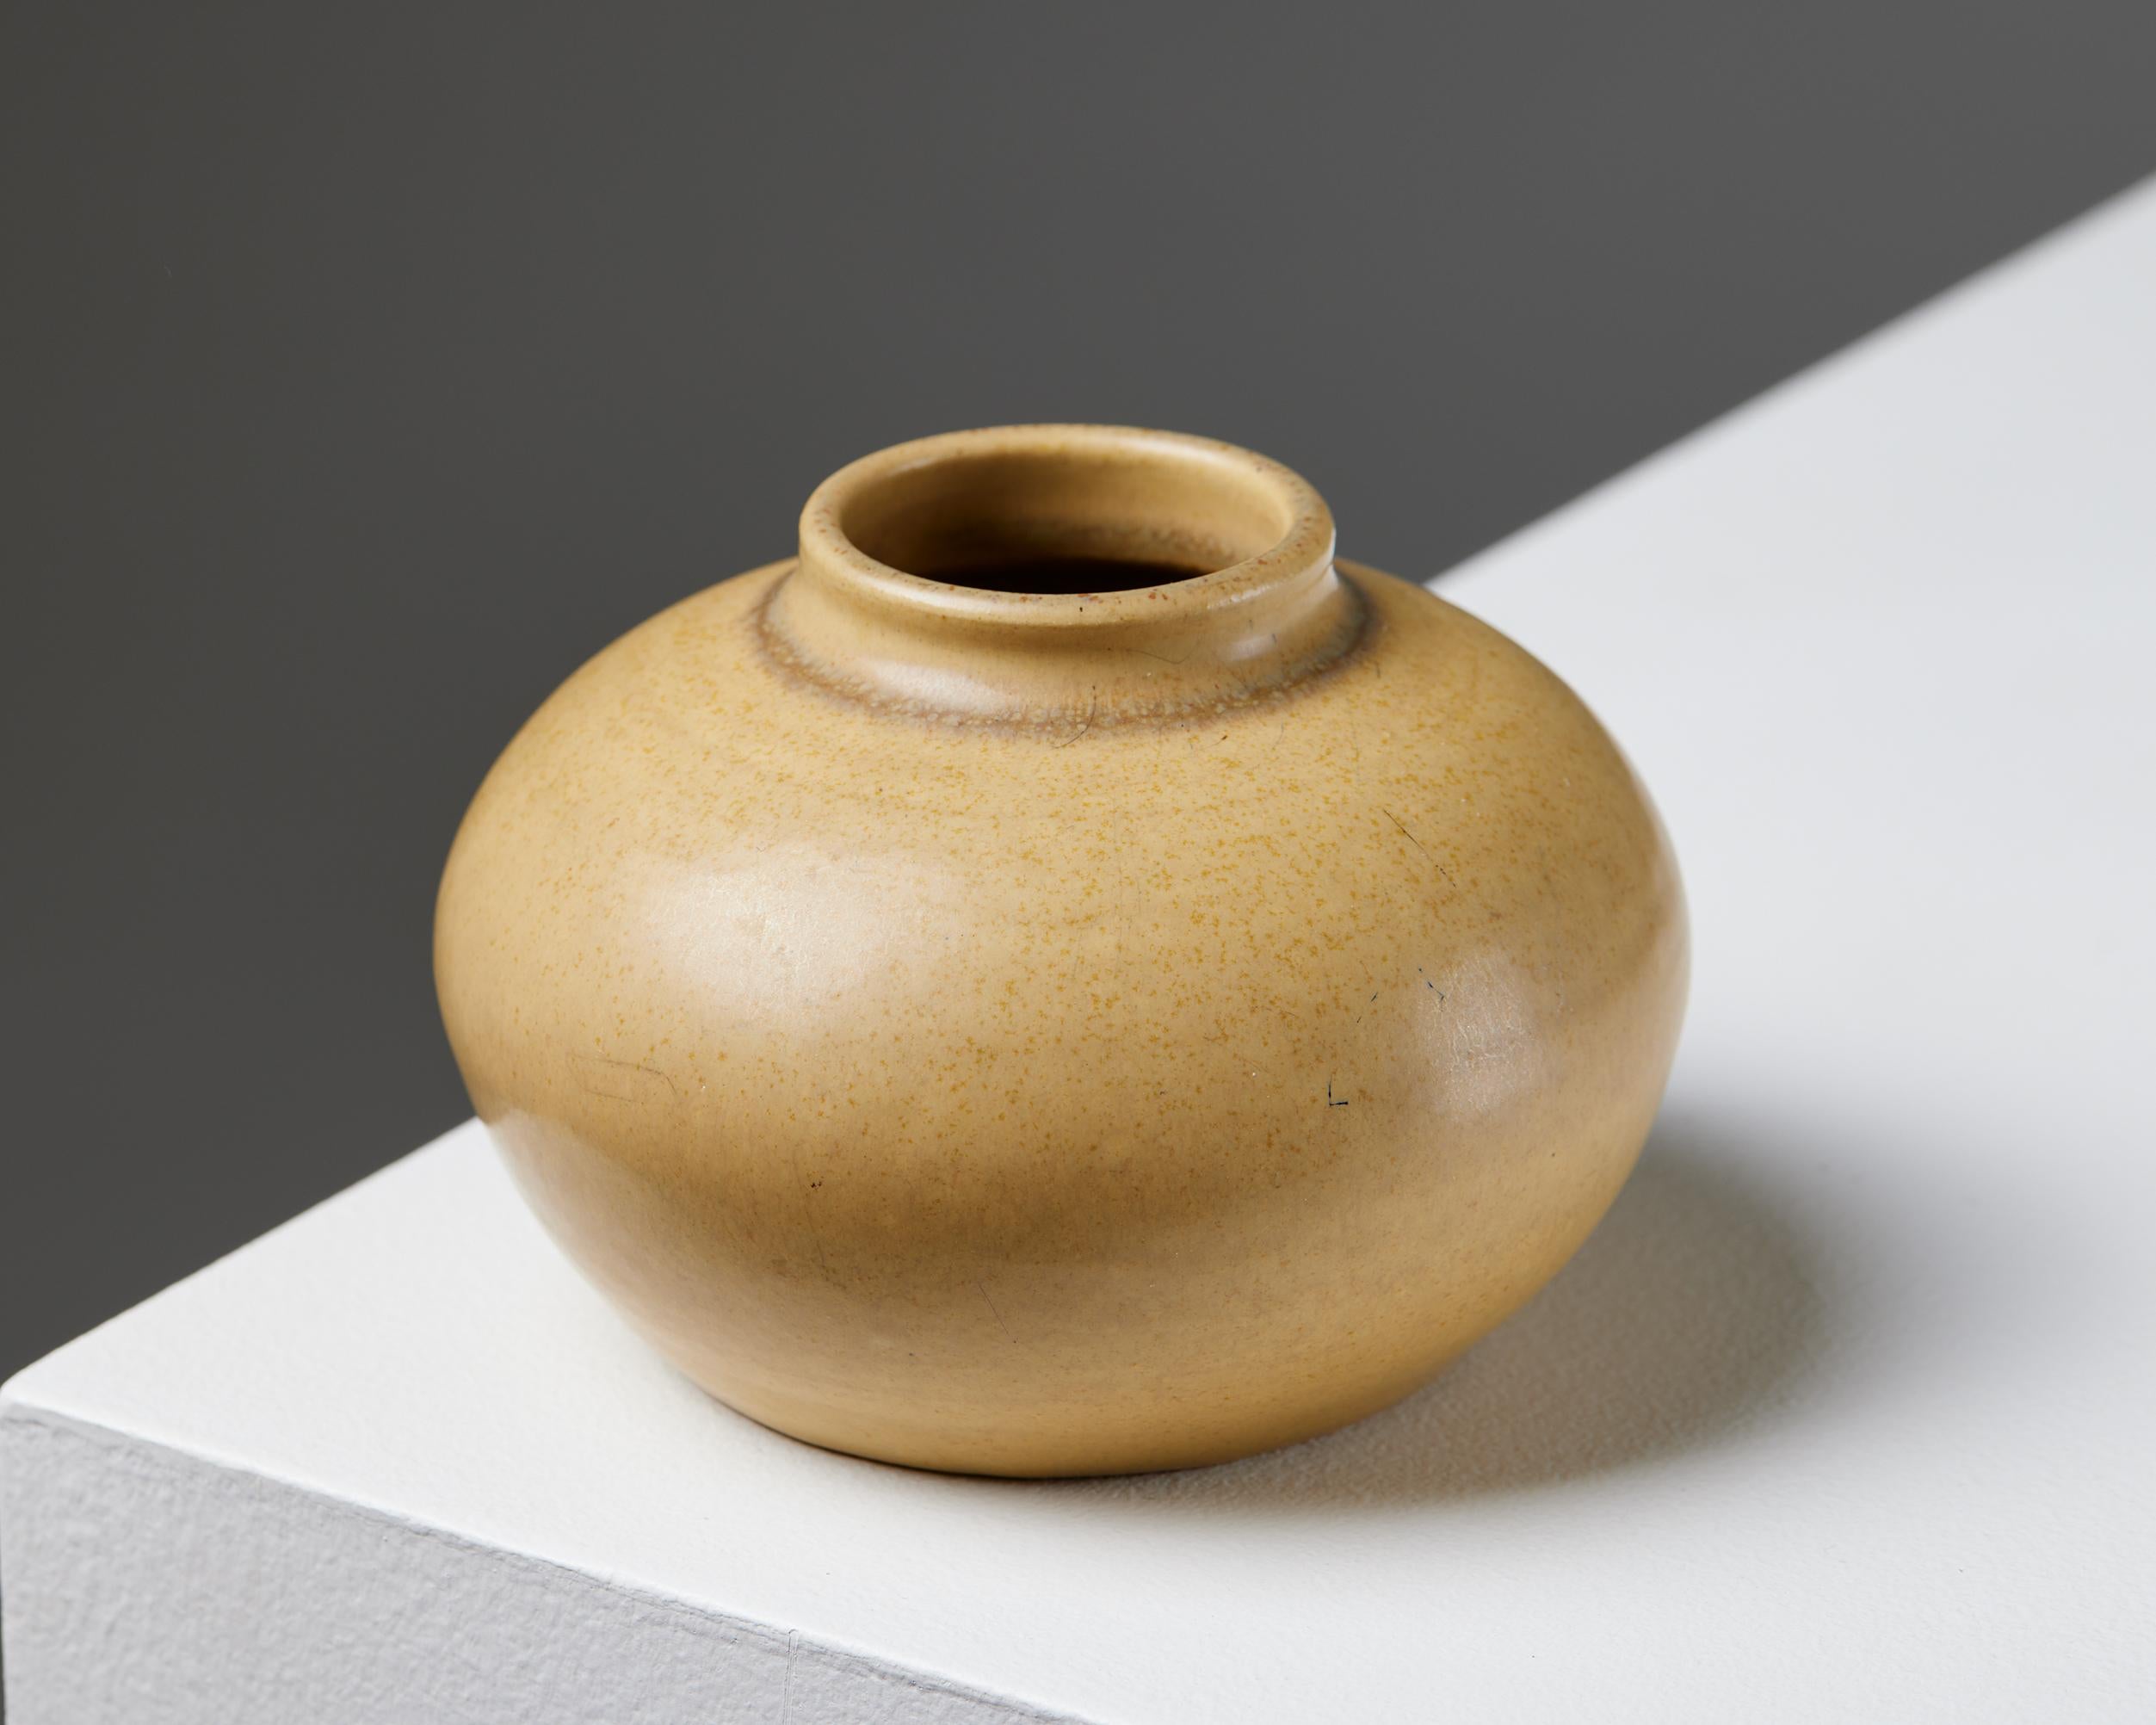 Vase, entworfen von Erich und Ingrid Triller für Tobo,
Schweden, 1950er Jahre.

Steingut.

Unterschrieben.

H: 6,5 cm / 2 1/2''
T: 9,5 cm / 3 3/4''